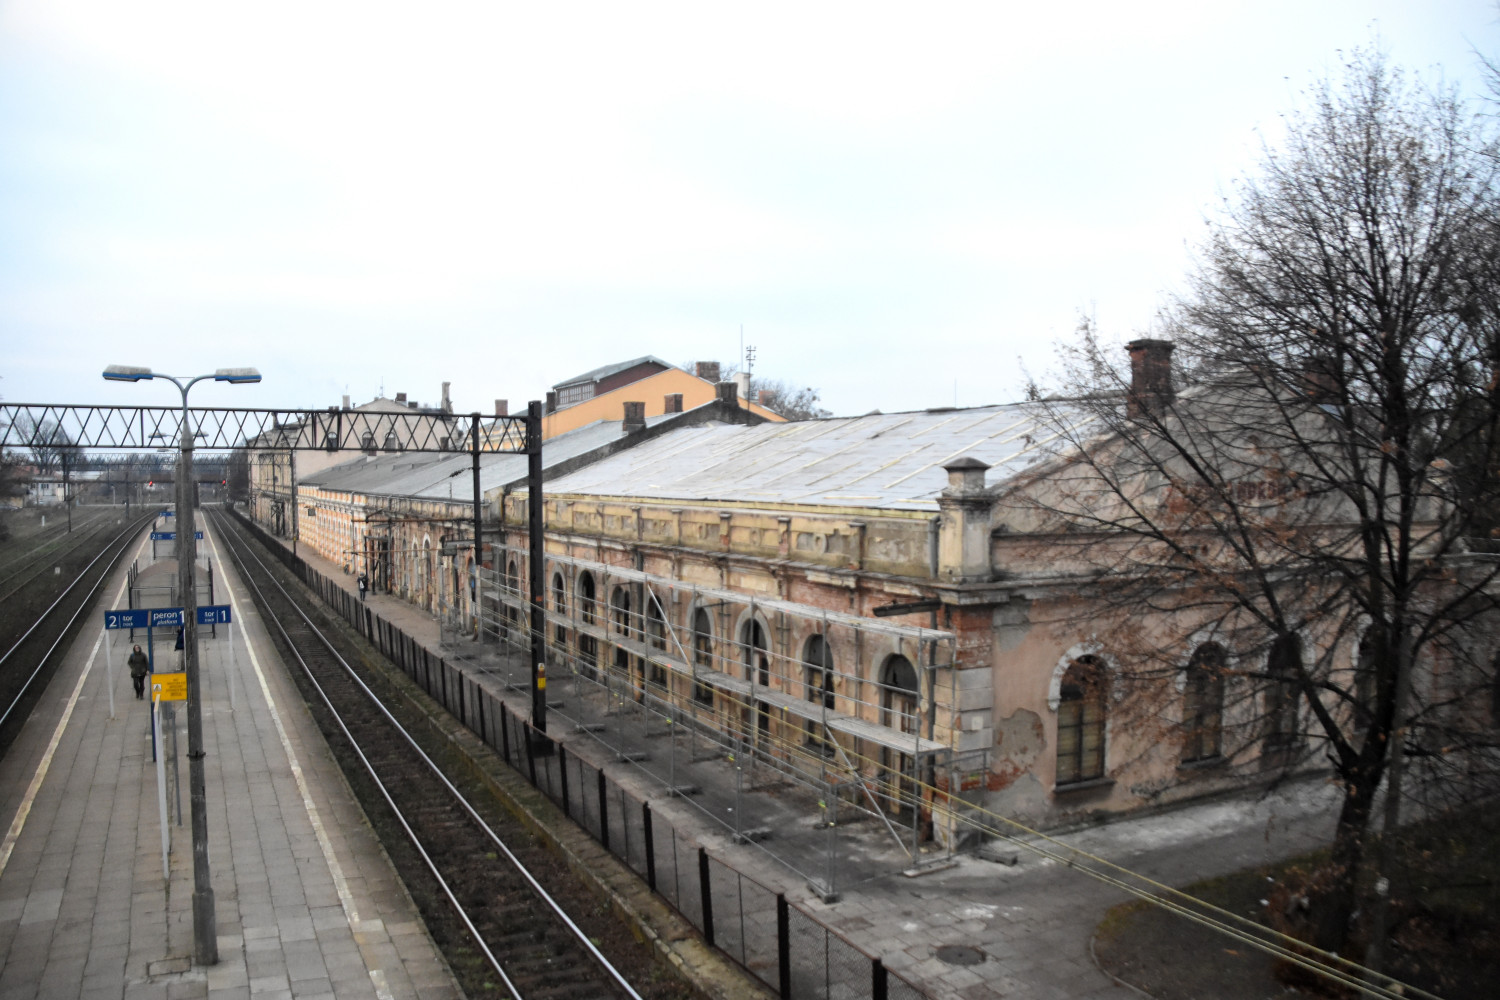 W 2018 roku dworzec wyglądał tak. Fot. Daniel Wiśniewski